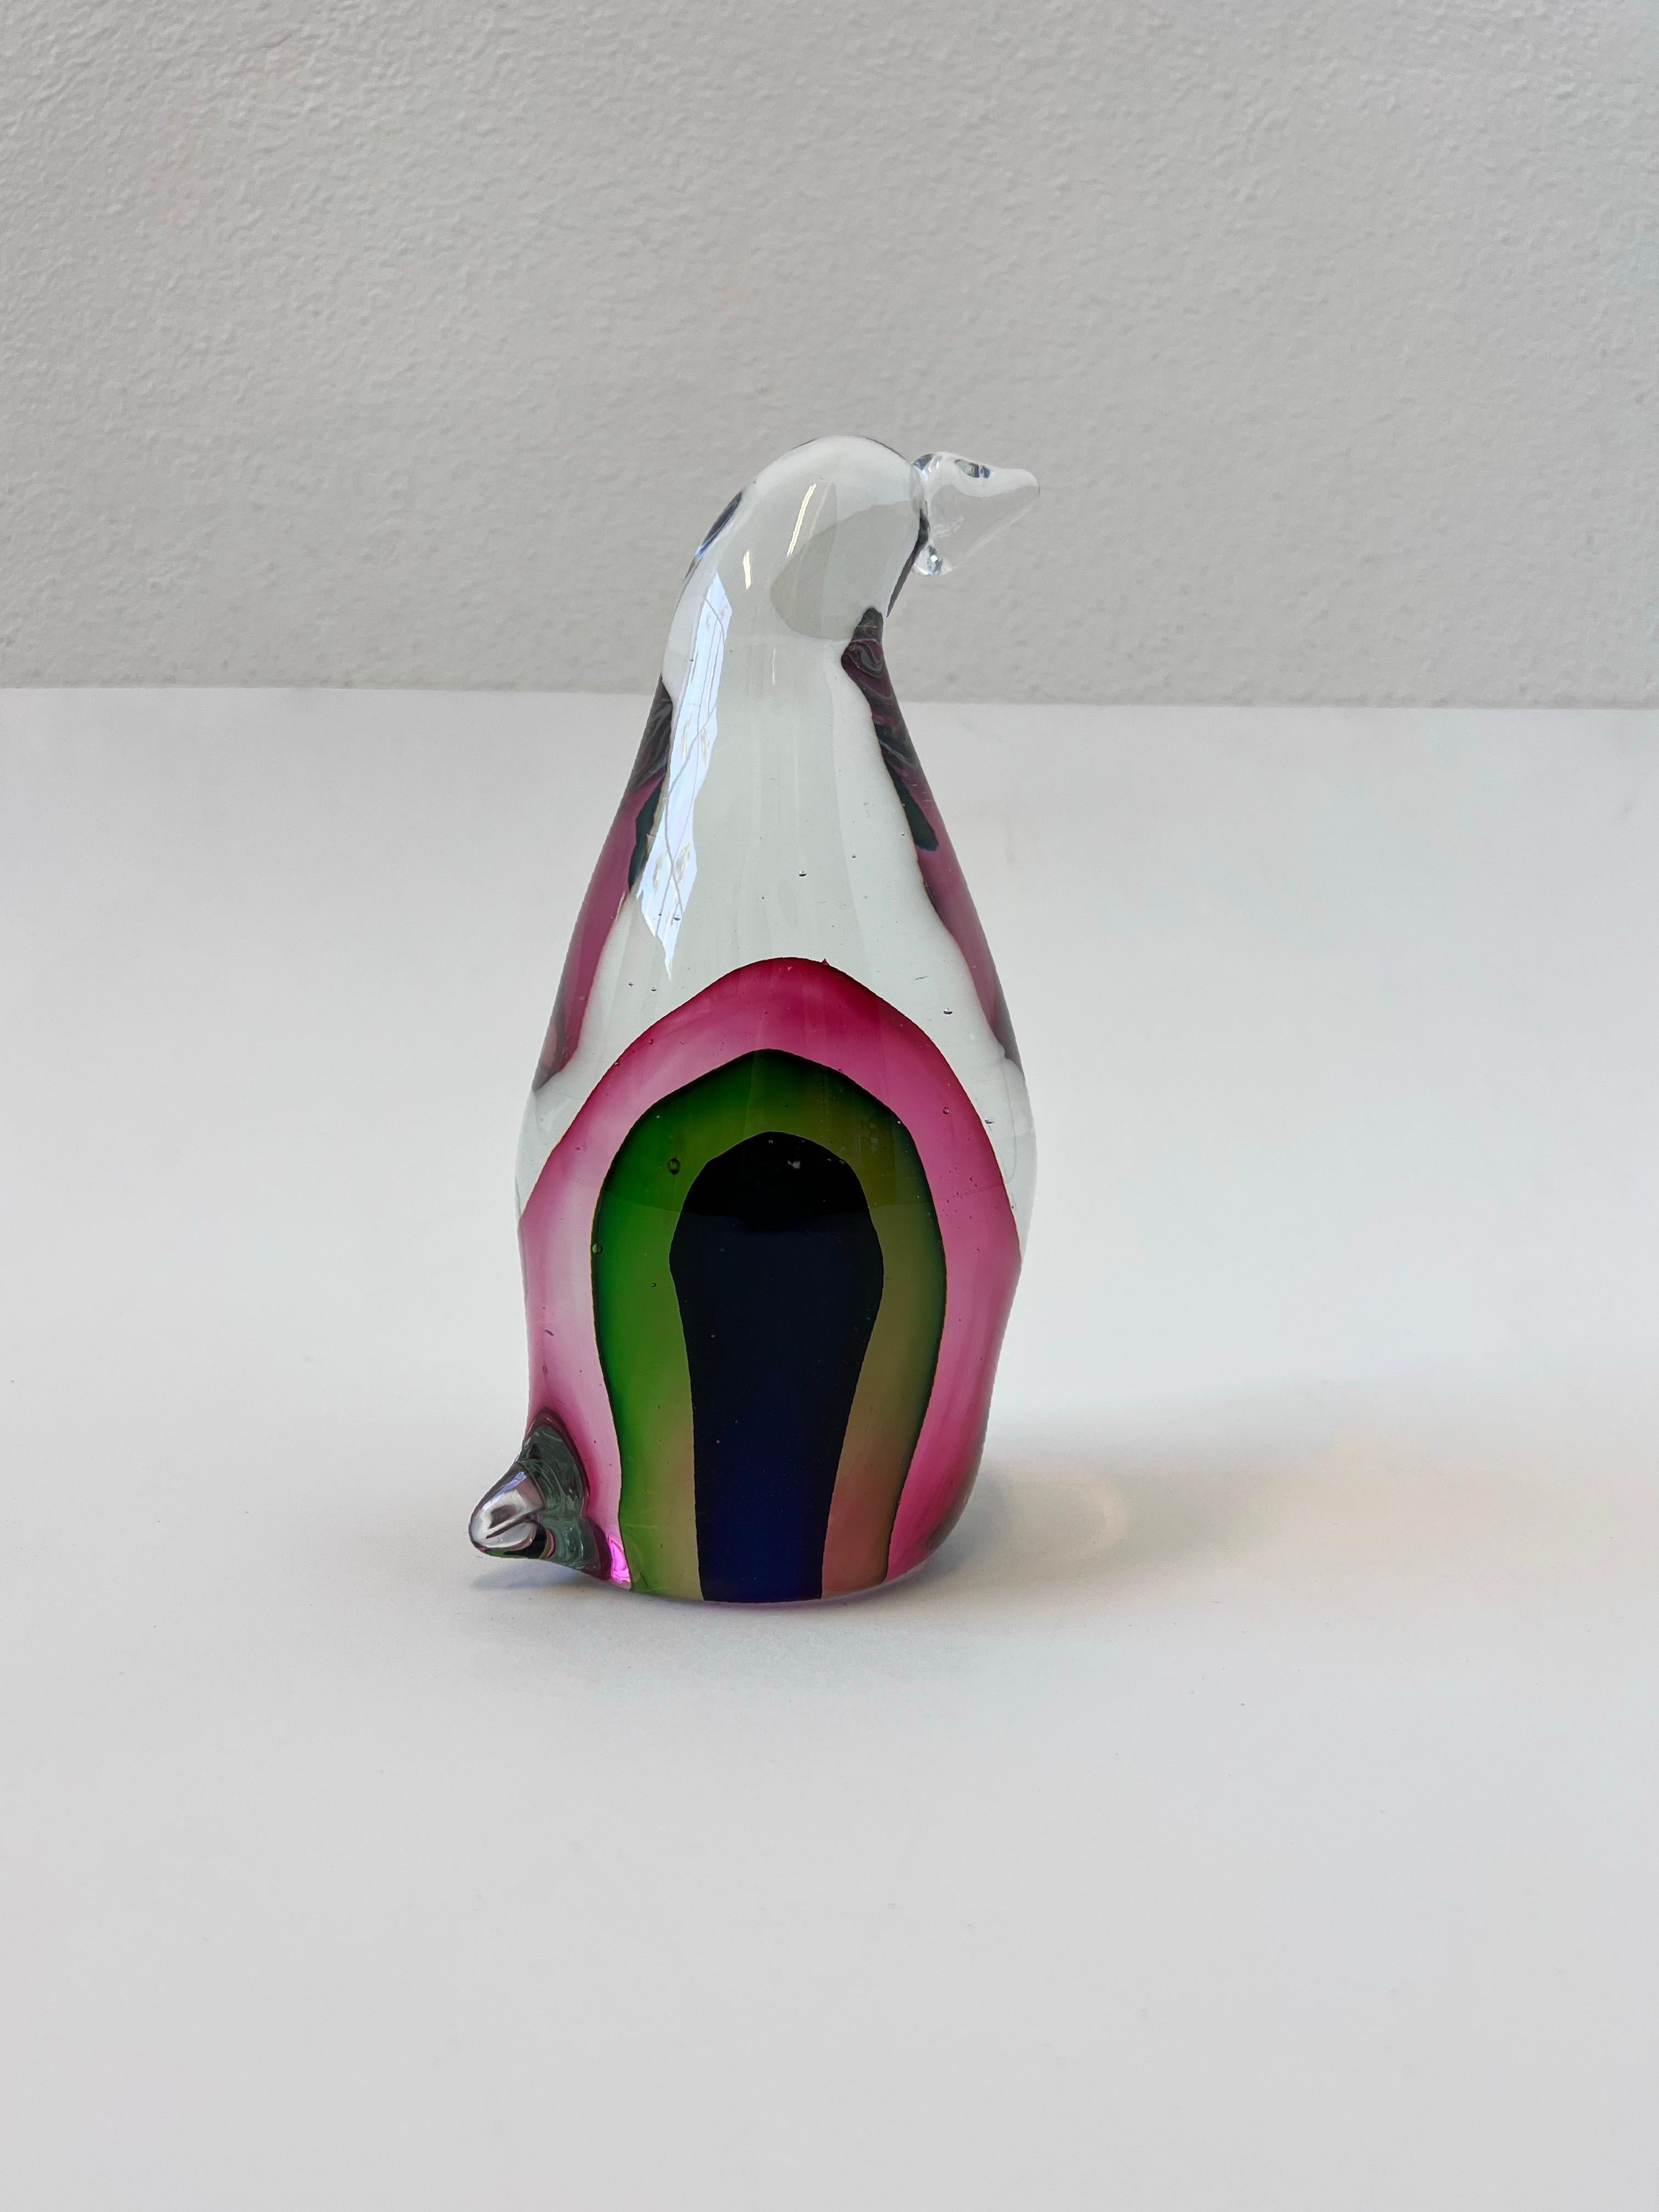 Schöne 1970er Jahre italienischen Sommerso Murano Glas Pinguin Skulptur. 
Wir sind uns nicht sicher, wer es entworfen hat, denn es ist nicht gekennzeichnet. 
In gutem Zustand kleiner Fleck auf einer Seite (siehe Detailfoto). 

Abmessung: 4